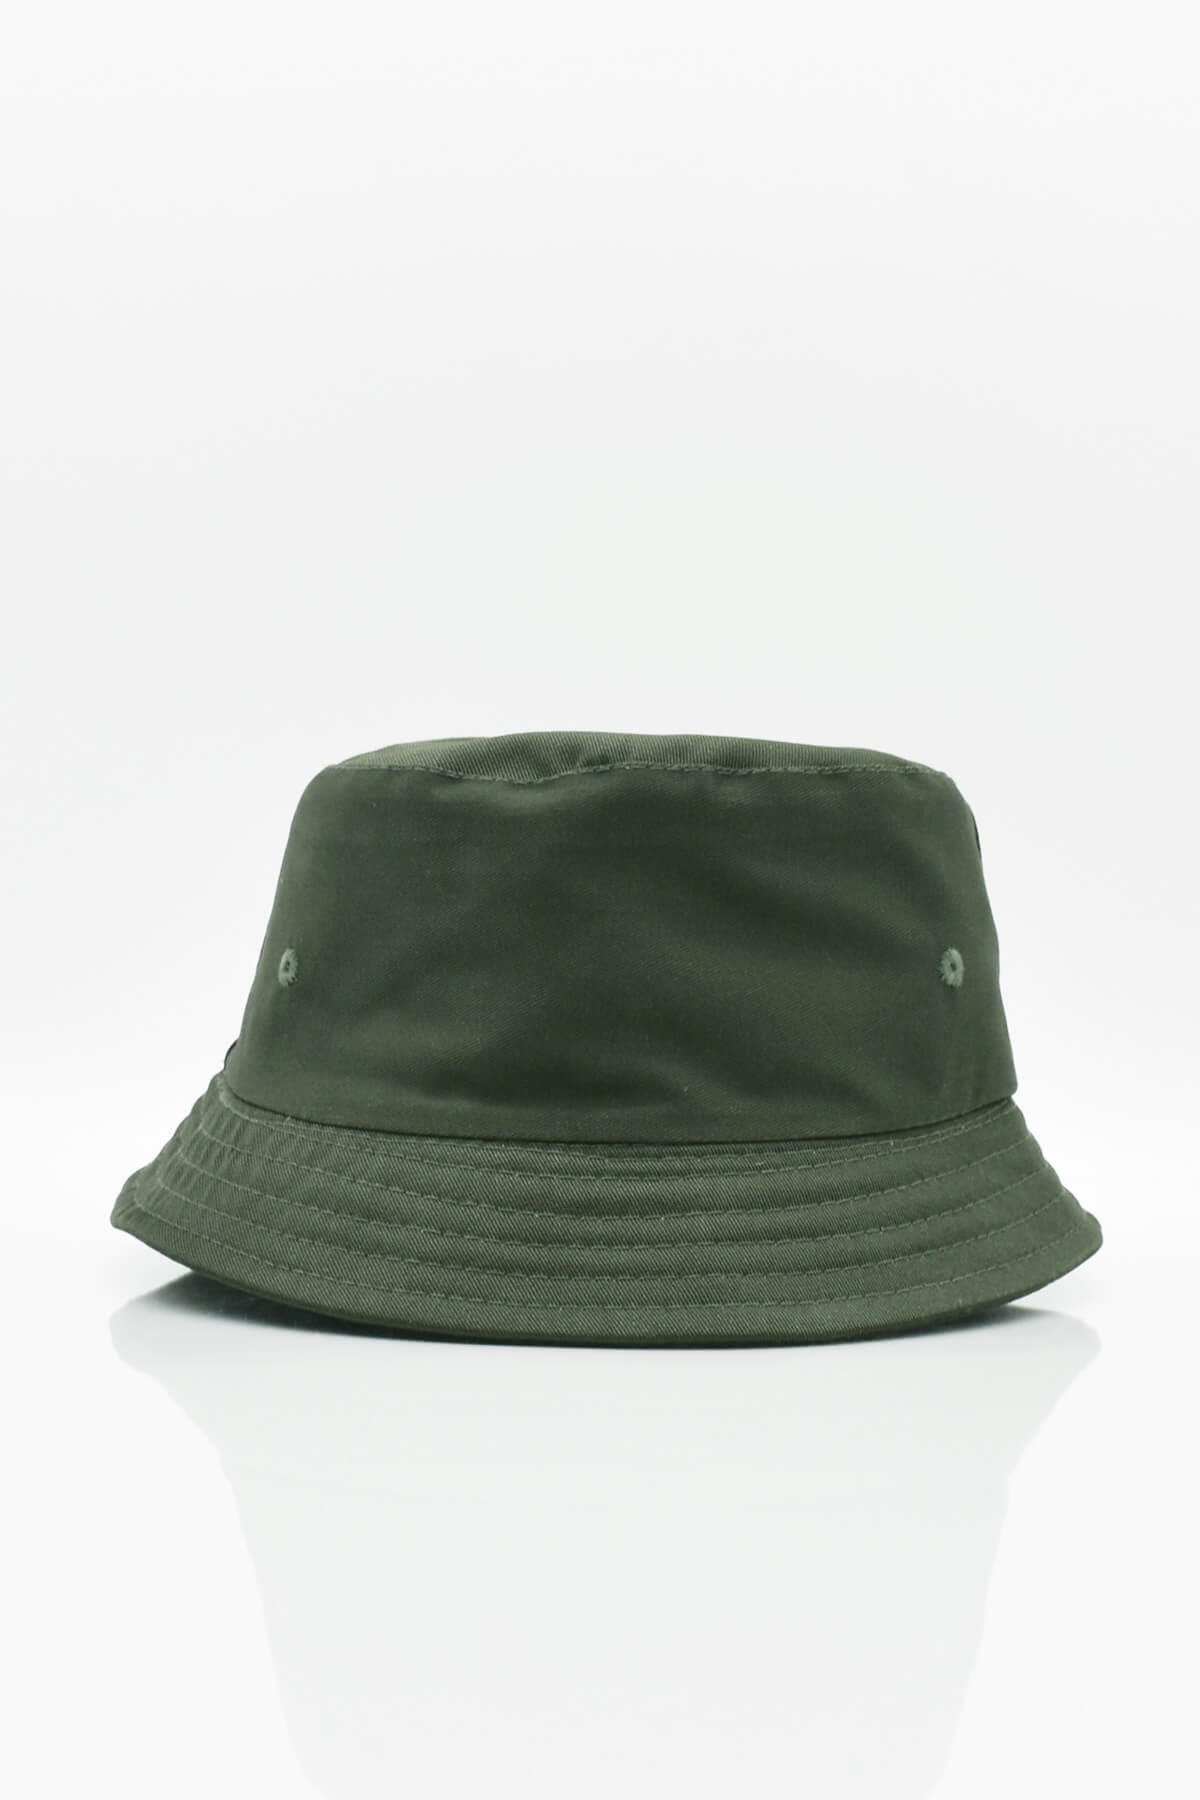 Külah Erkek Çocuk Pamuklu Güneş Koruyucu Bucket Şapka 9-15 Yaş KLH6936